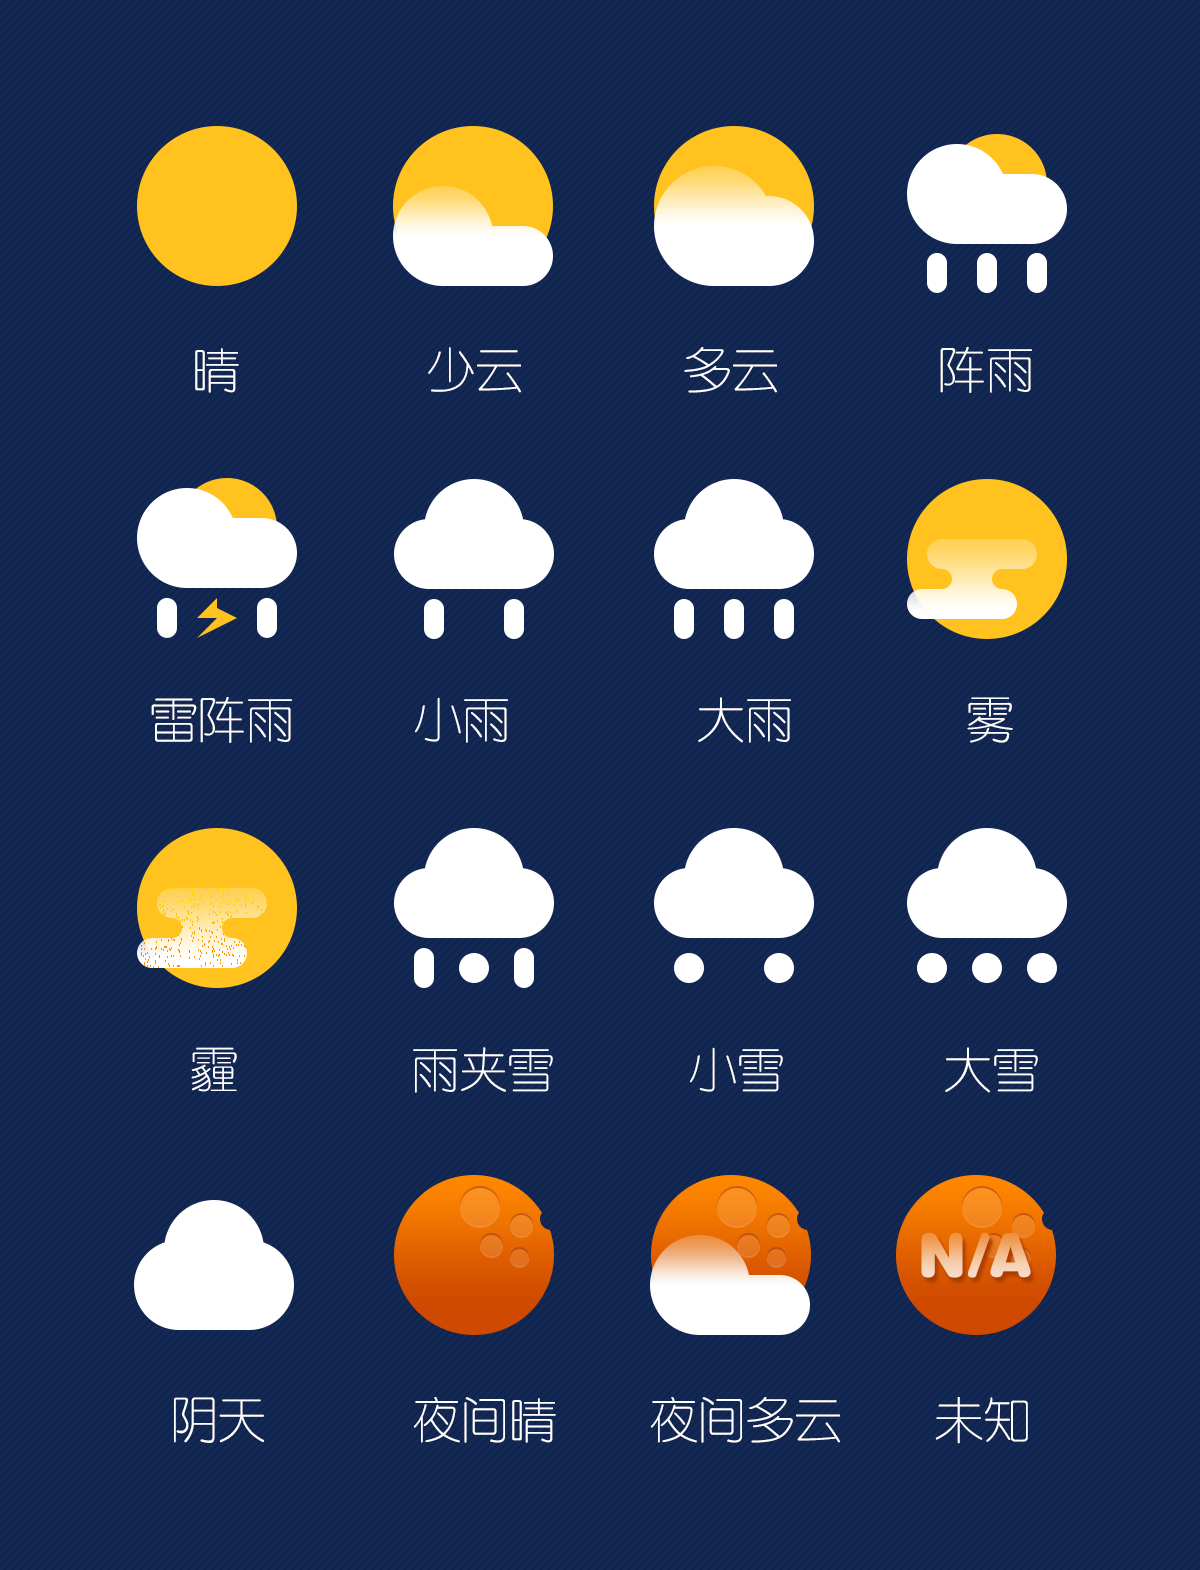 图片素材 : 天空, 阳光, 大气层, 白天, 天气, 积云, 气象现象, 地球大气 3888x2592 - - 109374 - 素材中国 ...